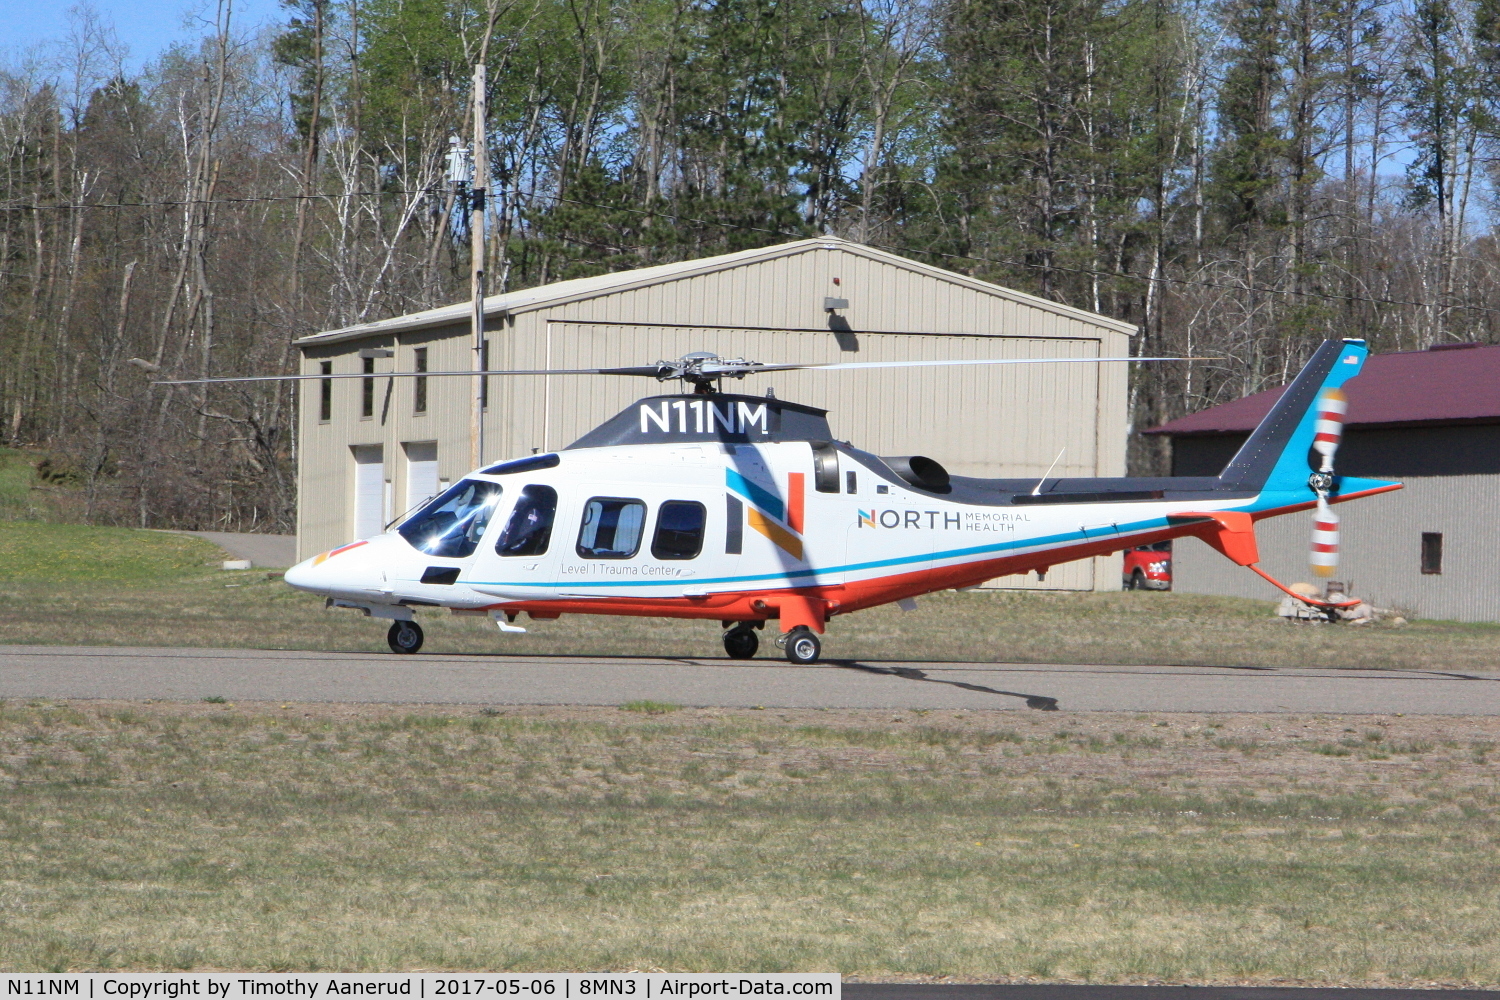 N11NM, 2008 Agusta A109S Grand C/N 22075, 2008 Agusta A109S Grand, c/n: 22075